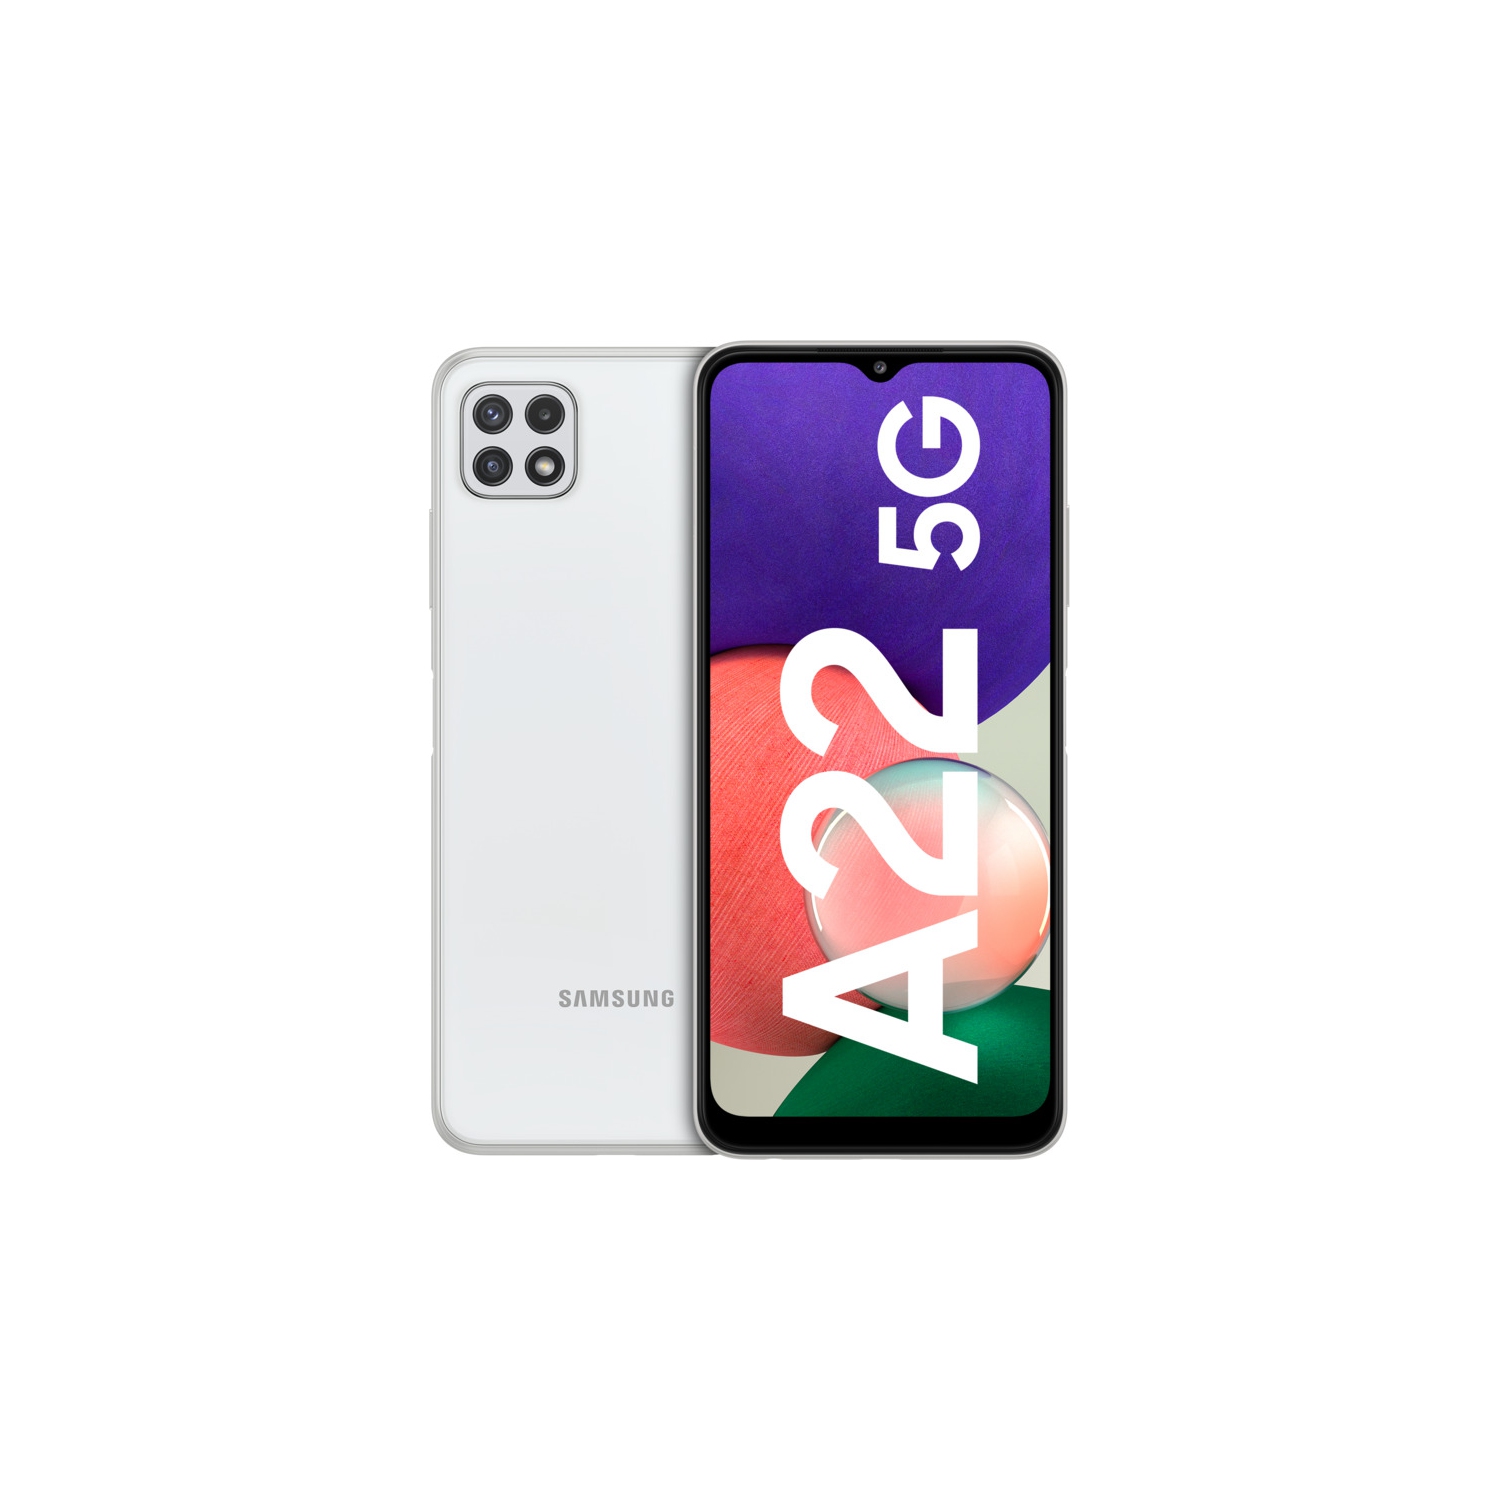 Samsung Galaxy A22 5G| 64GB 48MP Triple Camera -Dual SIM Unlocked - Canada + Global 4G - International Model - Brand New - White